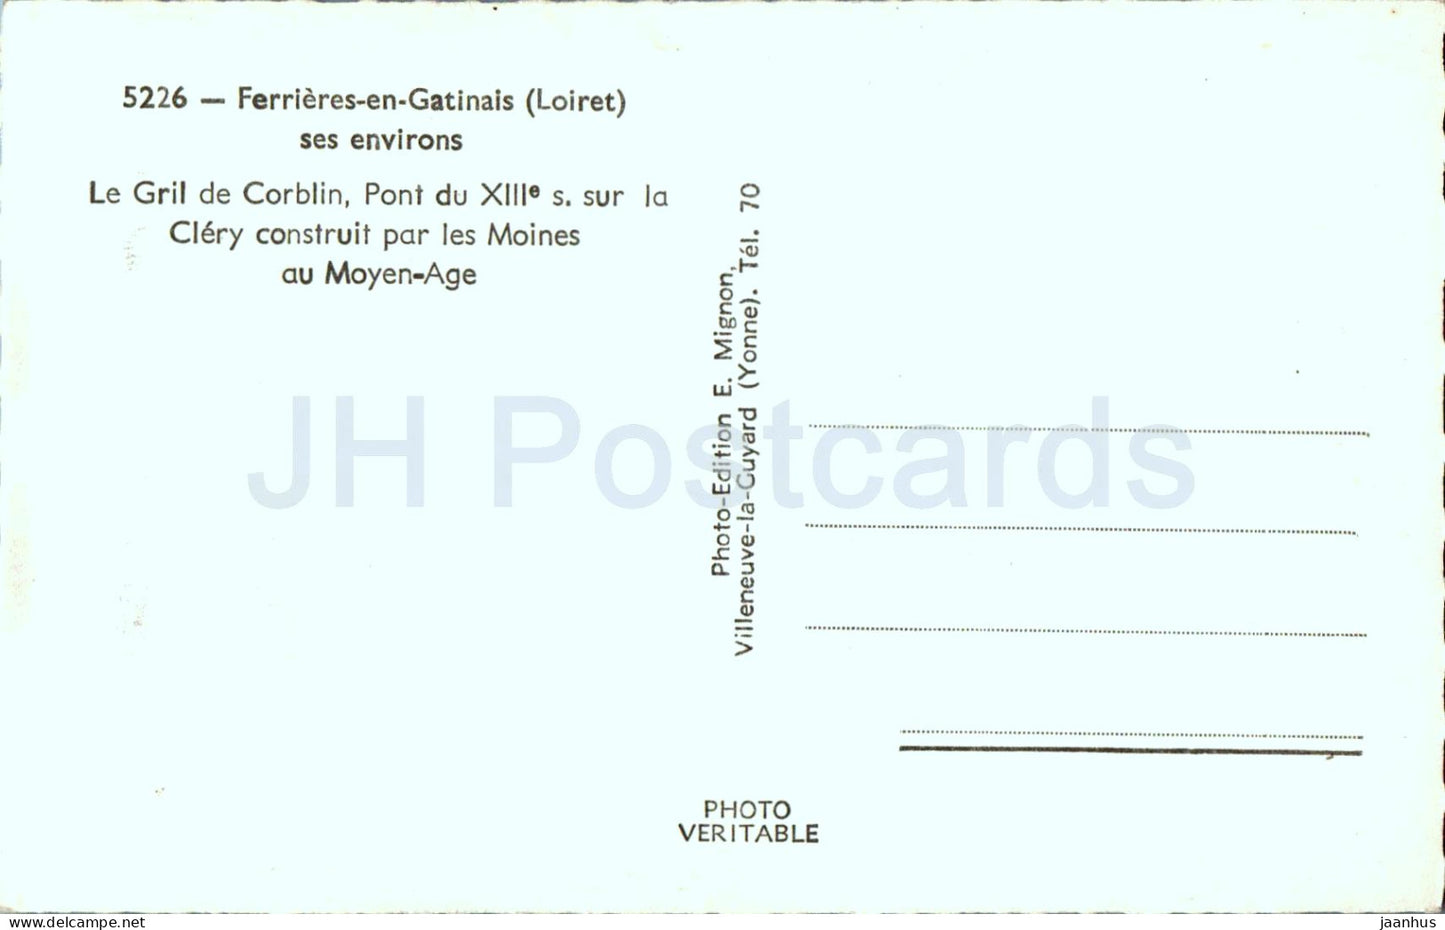 Ferrieres en Gatinais - Le Gril de Corblin - Pont - Brücke - 5226 - alte Postkarte - Frankreich - unbenutzt 